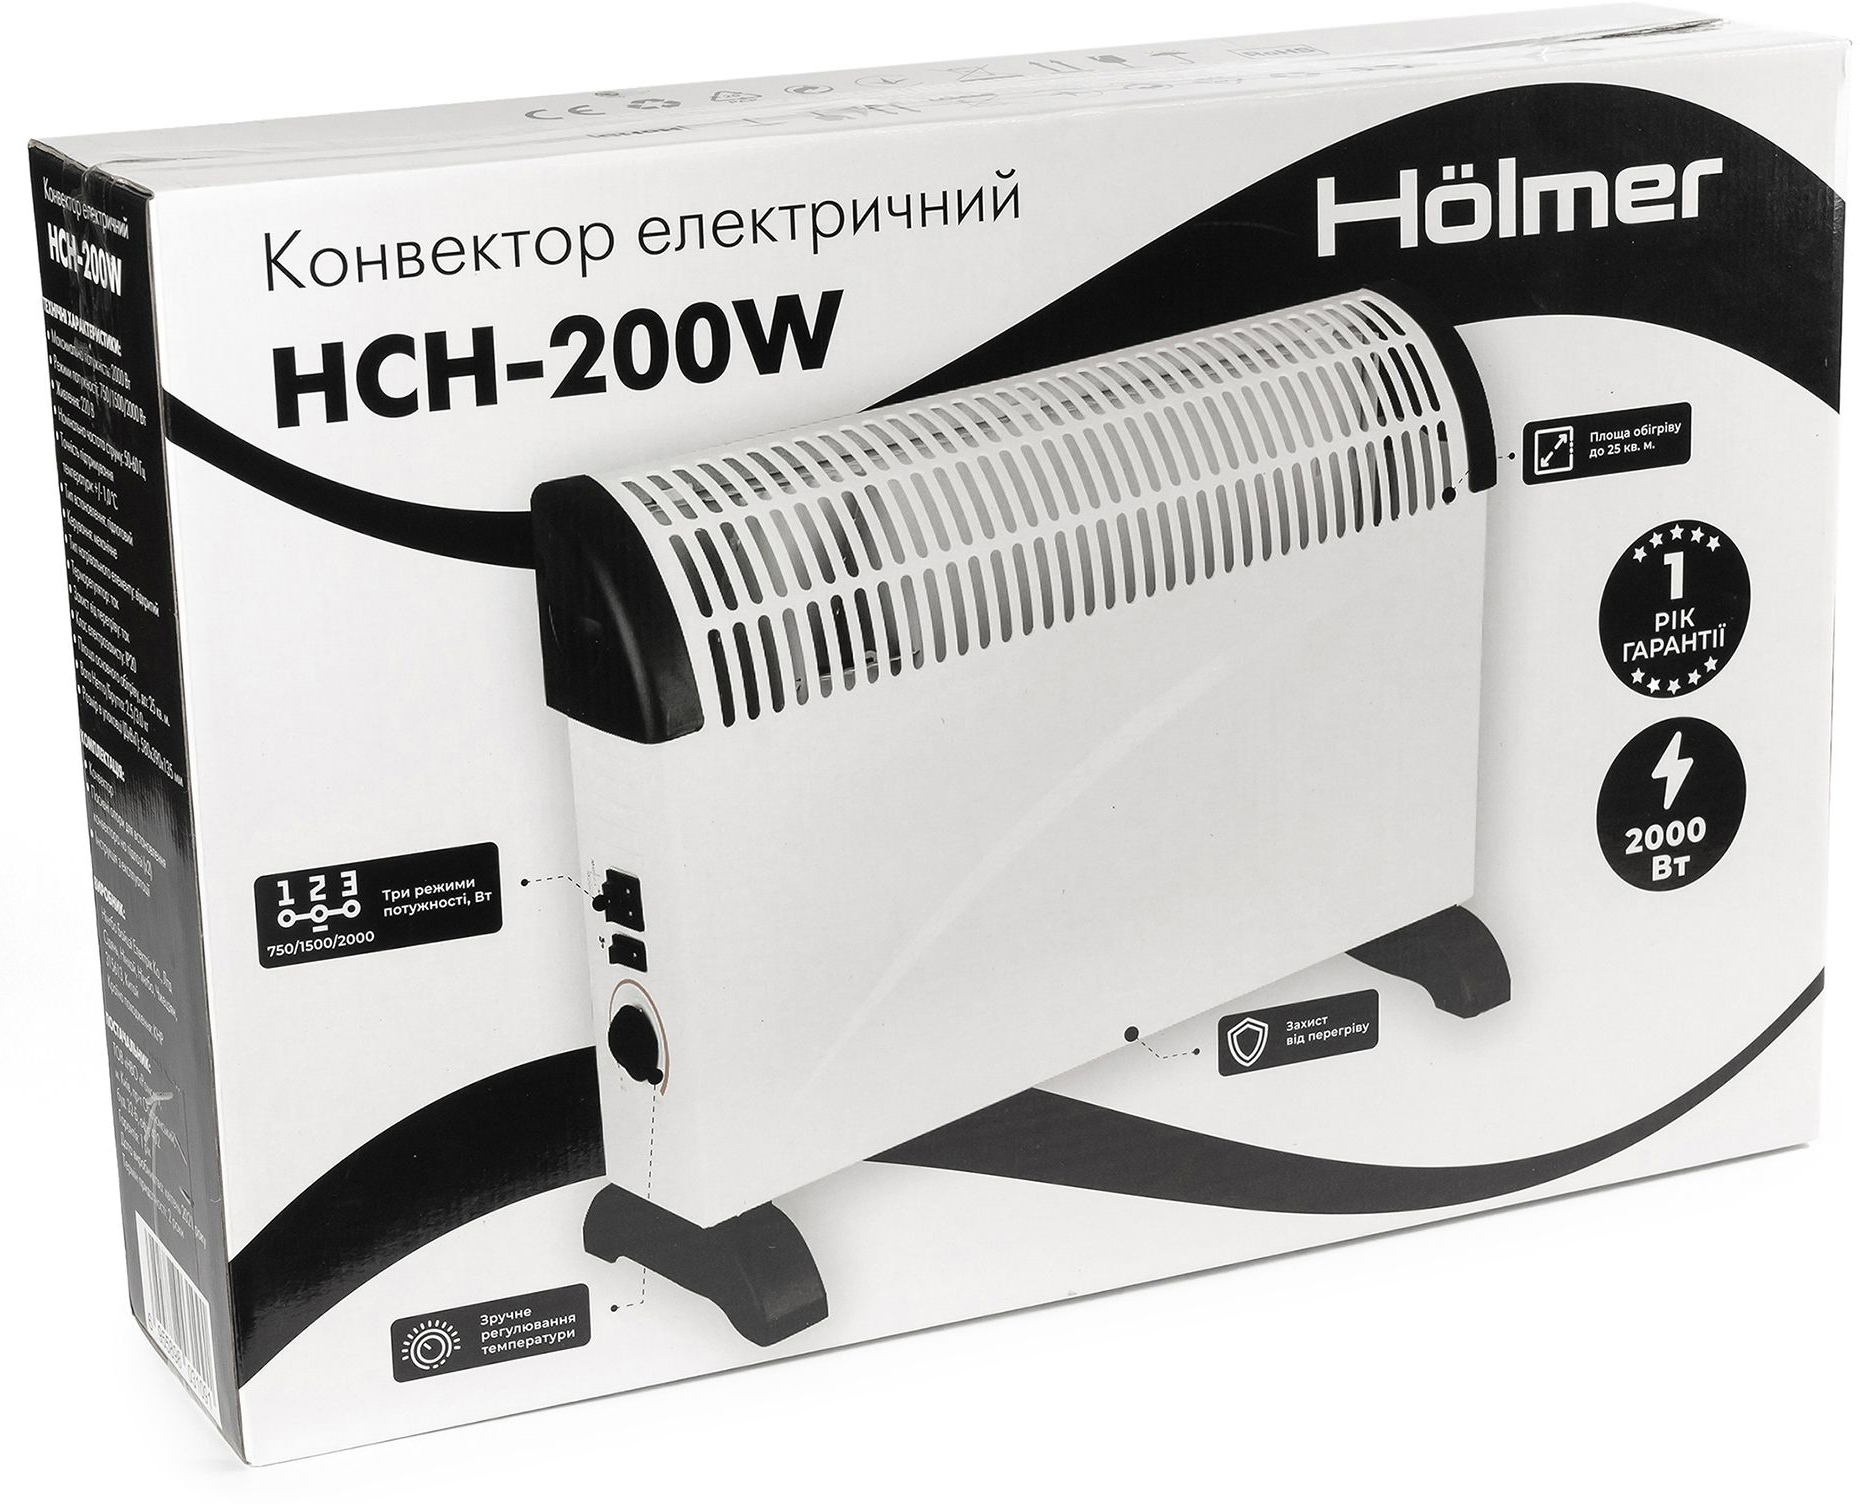 Электрический конвектор Holmer HCH-200W  инструкция - изображение 6